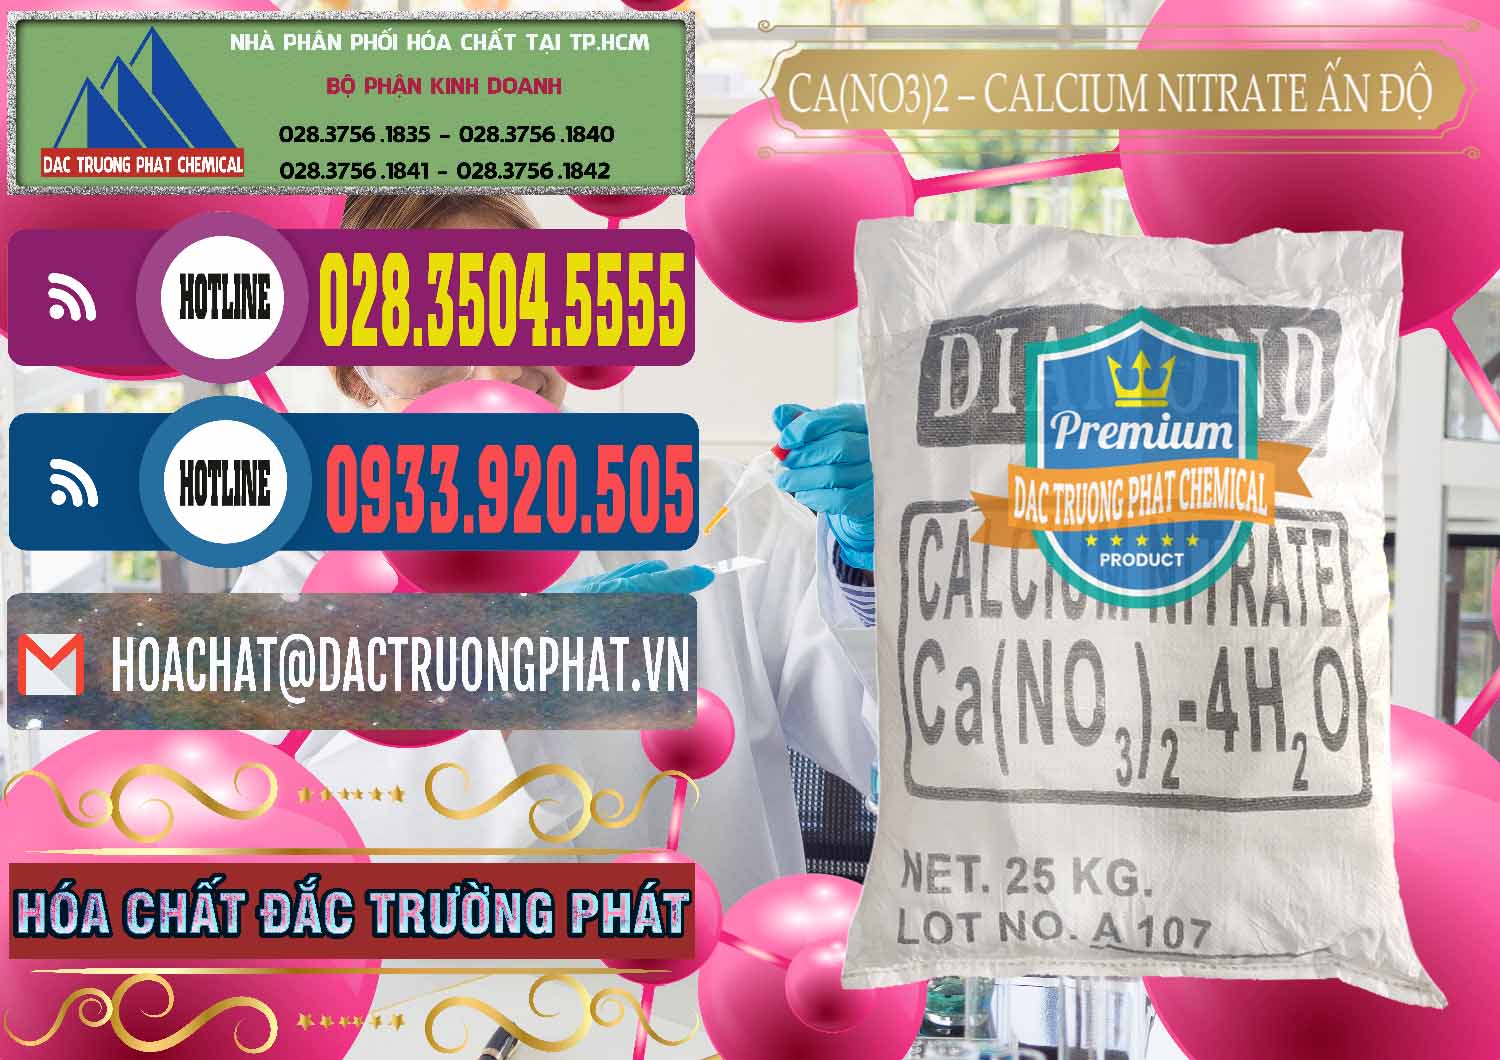 Công ty cung cấp và bán CA(NO3)2 – Calcium Nitrate Ấn Độ India - 0038 - Đơn vị chuyên bán & phân phối hóa chất tại TP.HCM - muabanhoachat.com.vn